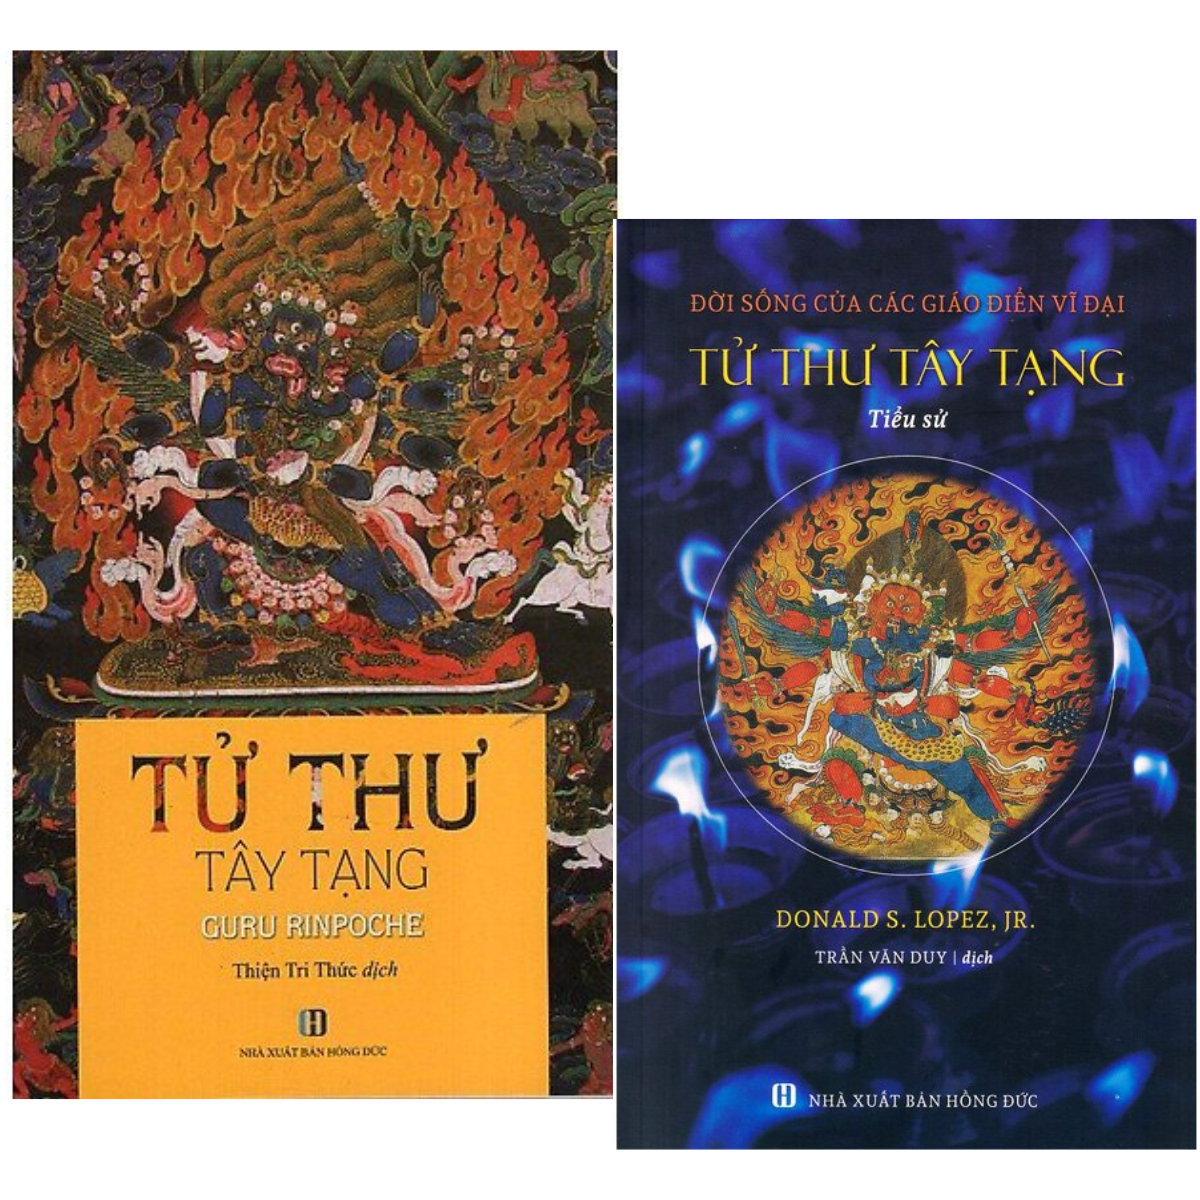 Tử Thư Tây Tạng + Tiểu Sử Tử Thư Tây Tạng (2 quyển)